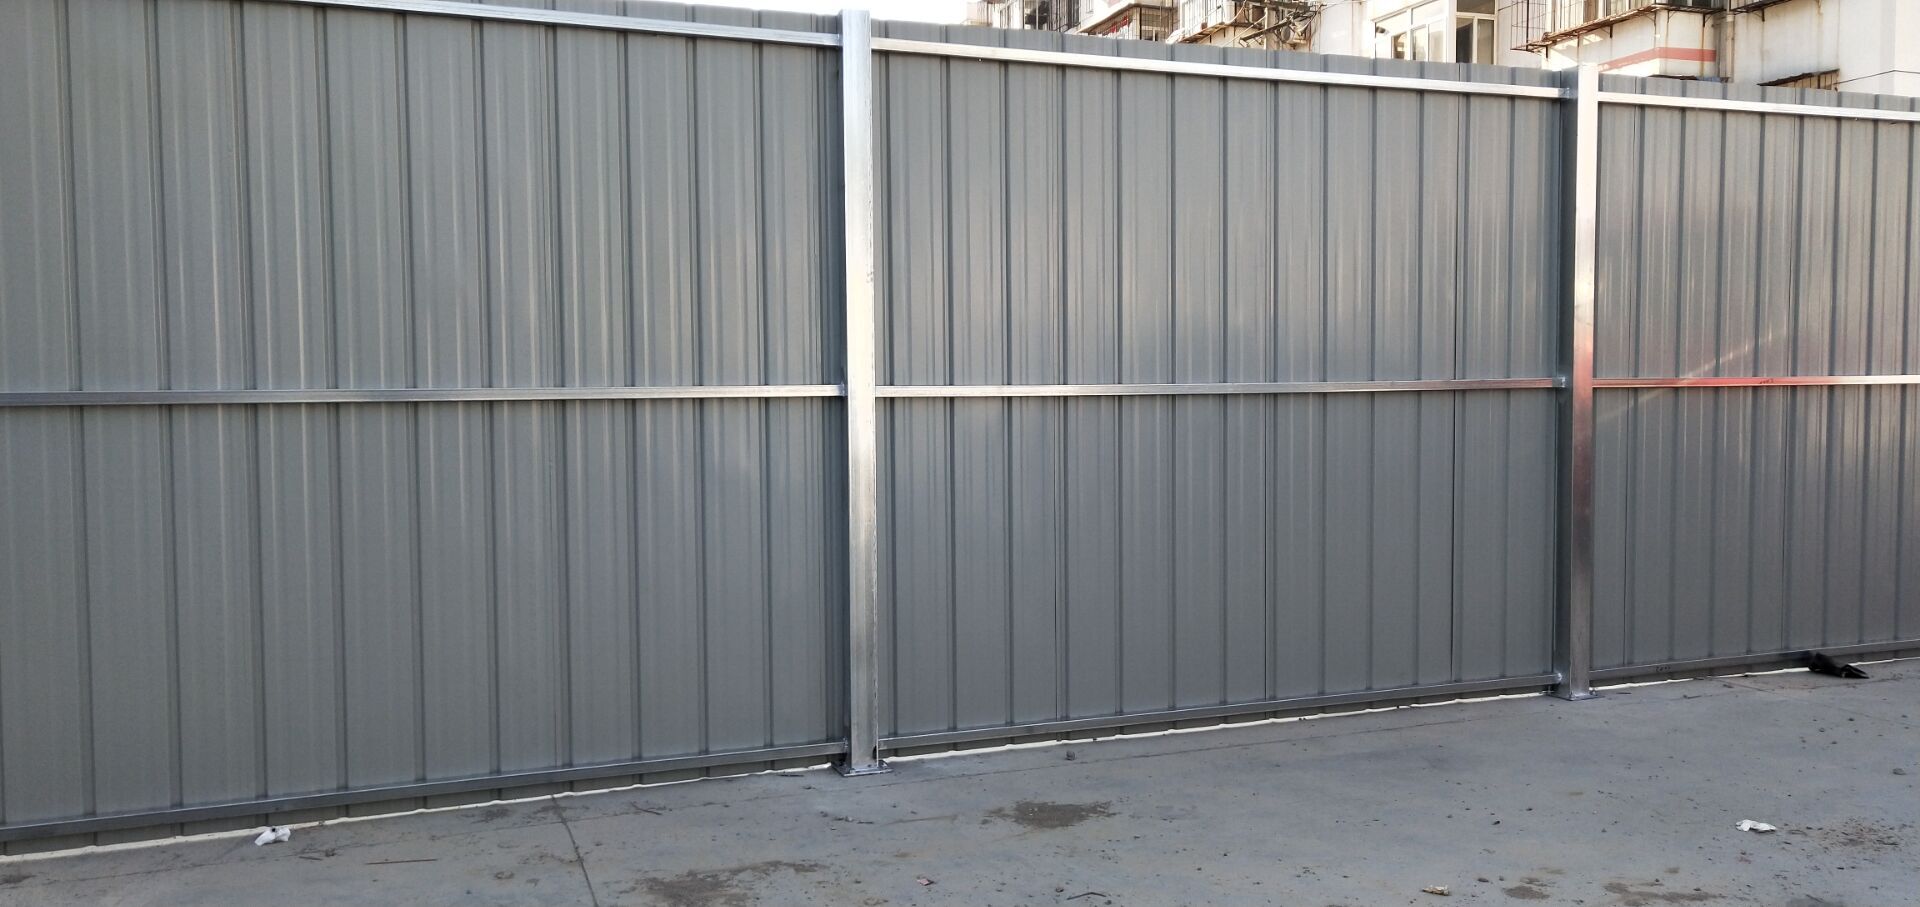 天津宁河区彩钢围挡板 2米高彩钢围挡板价格 定制商家